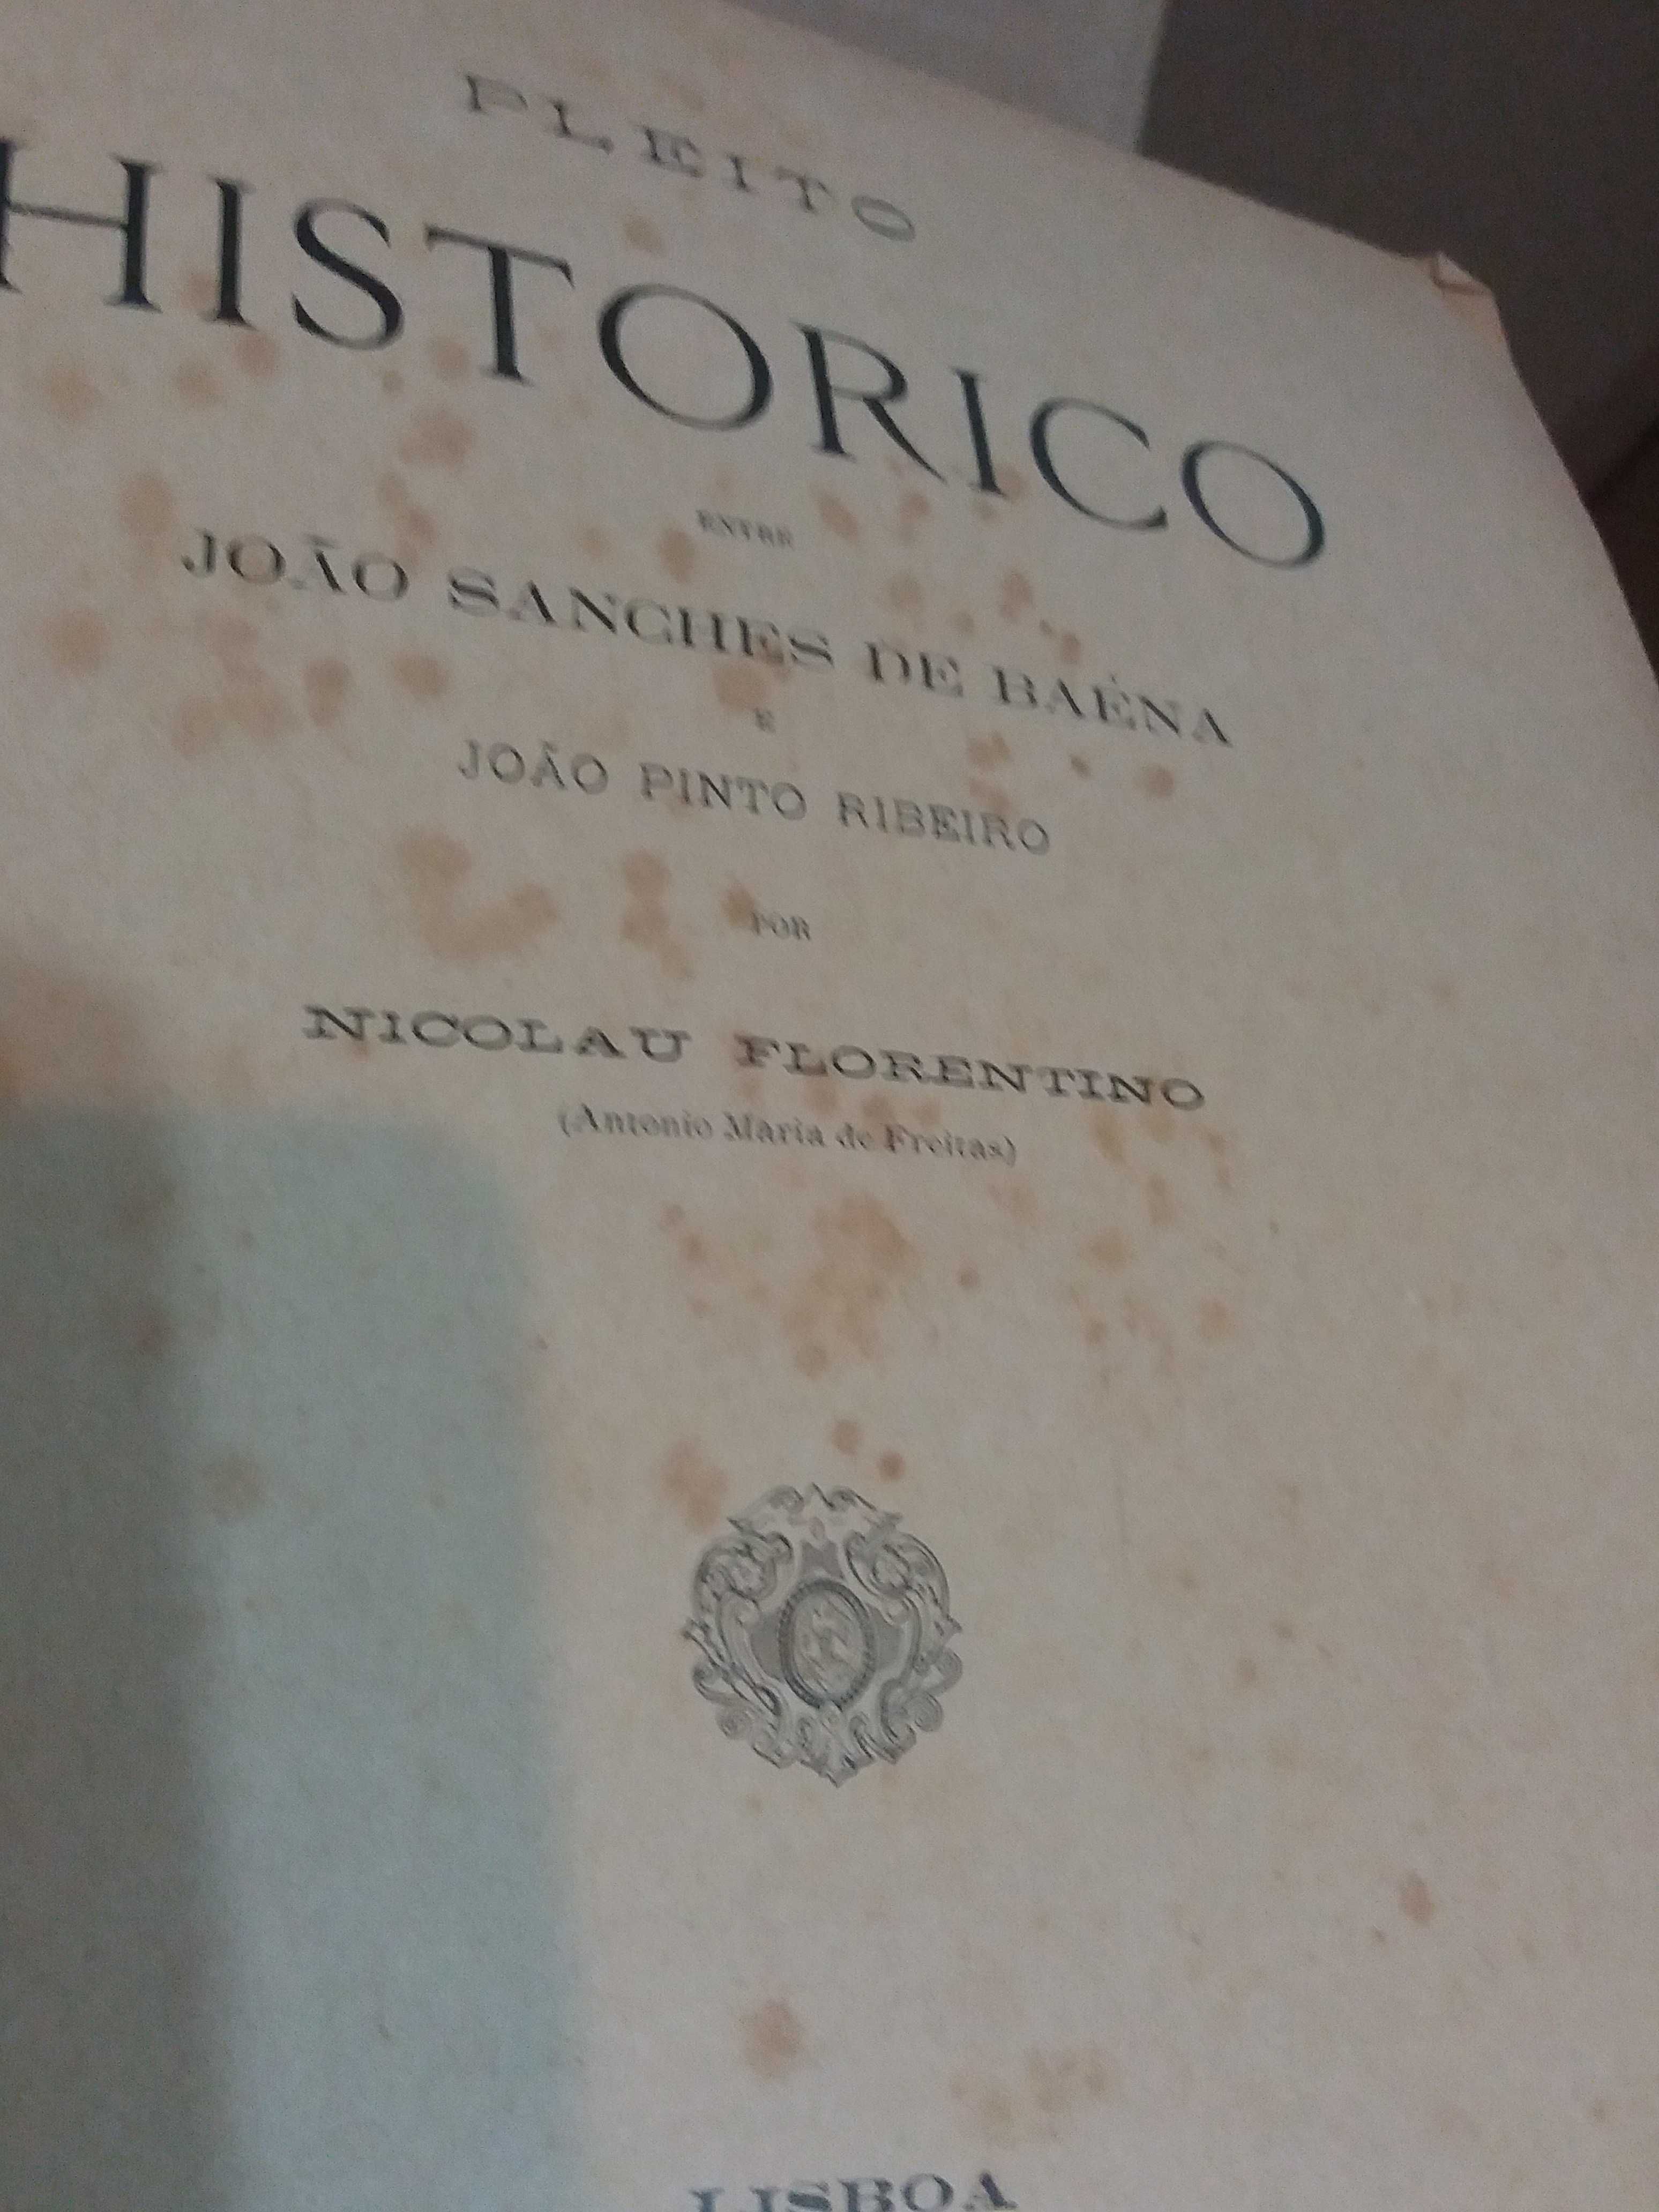 Pleito Histórico entre João Sanches Baena e João Pinto Ribeiro.